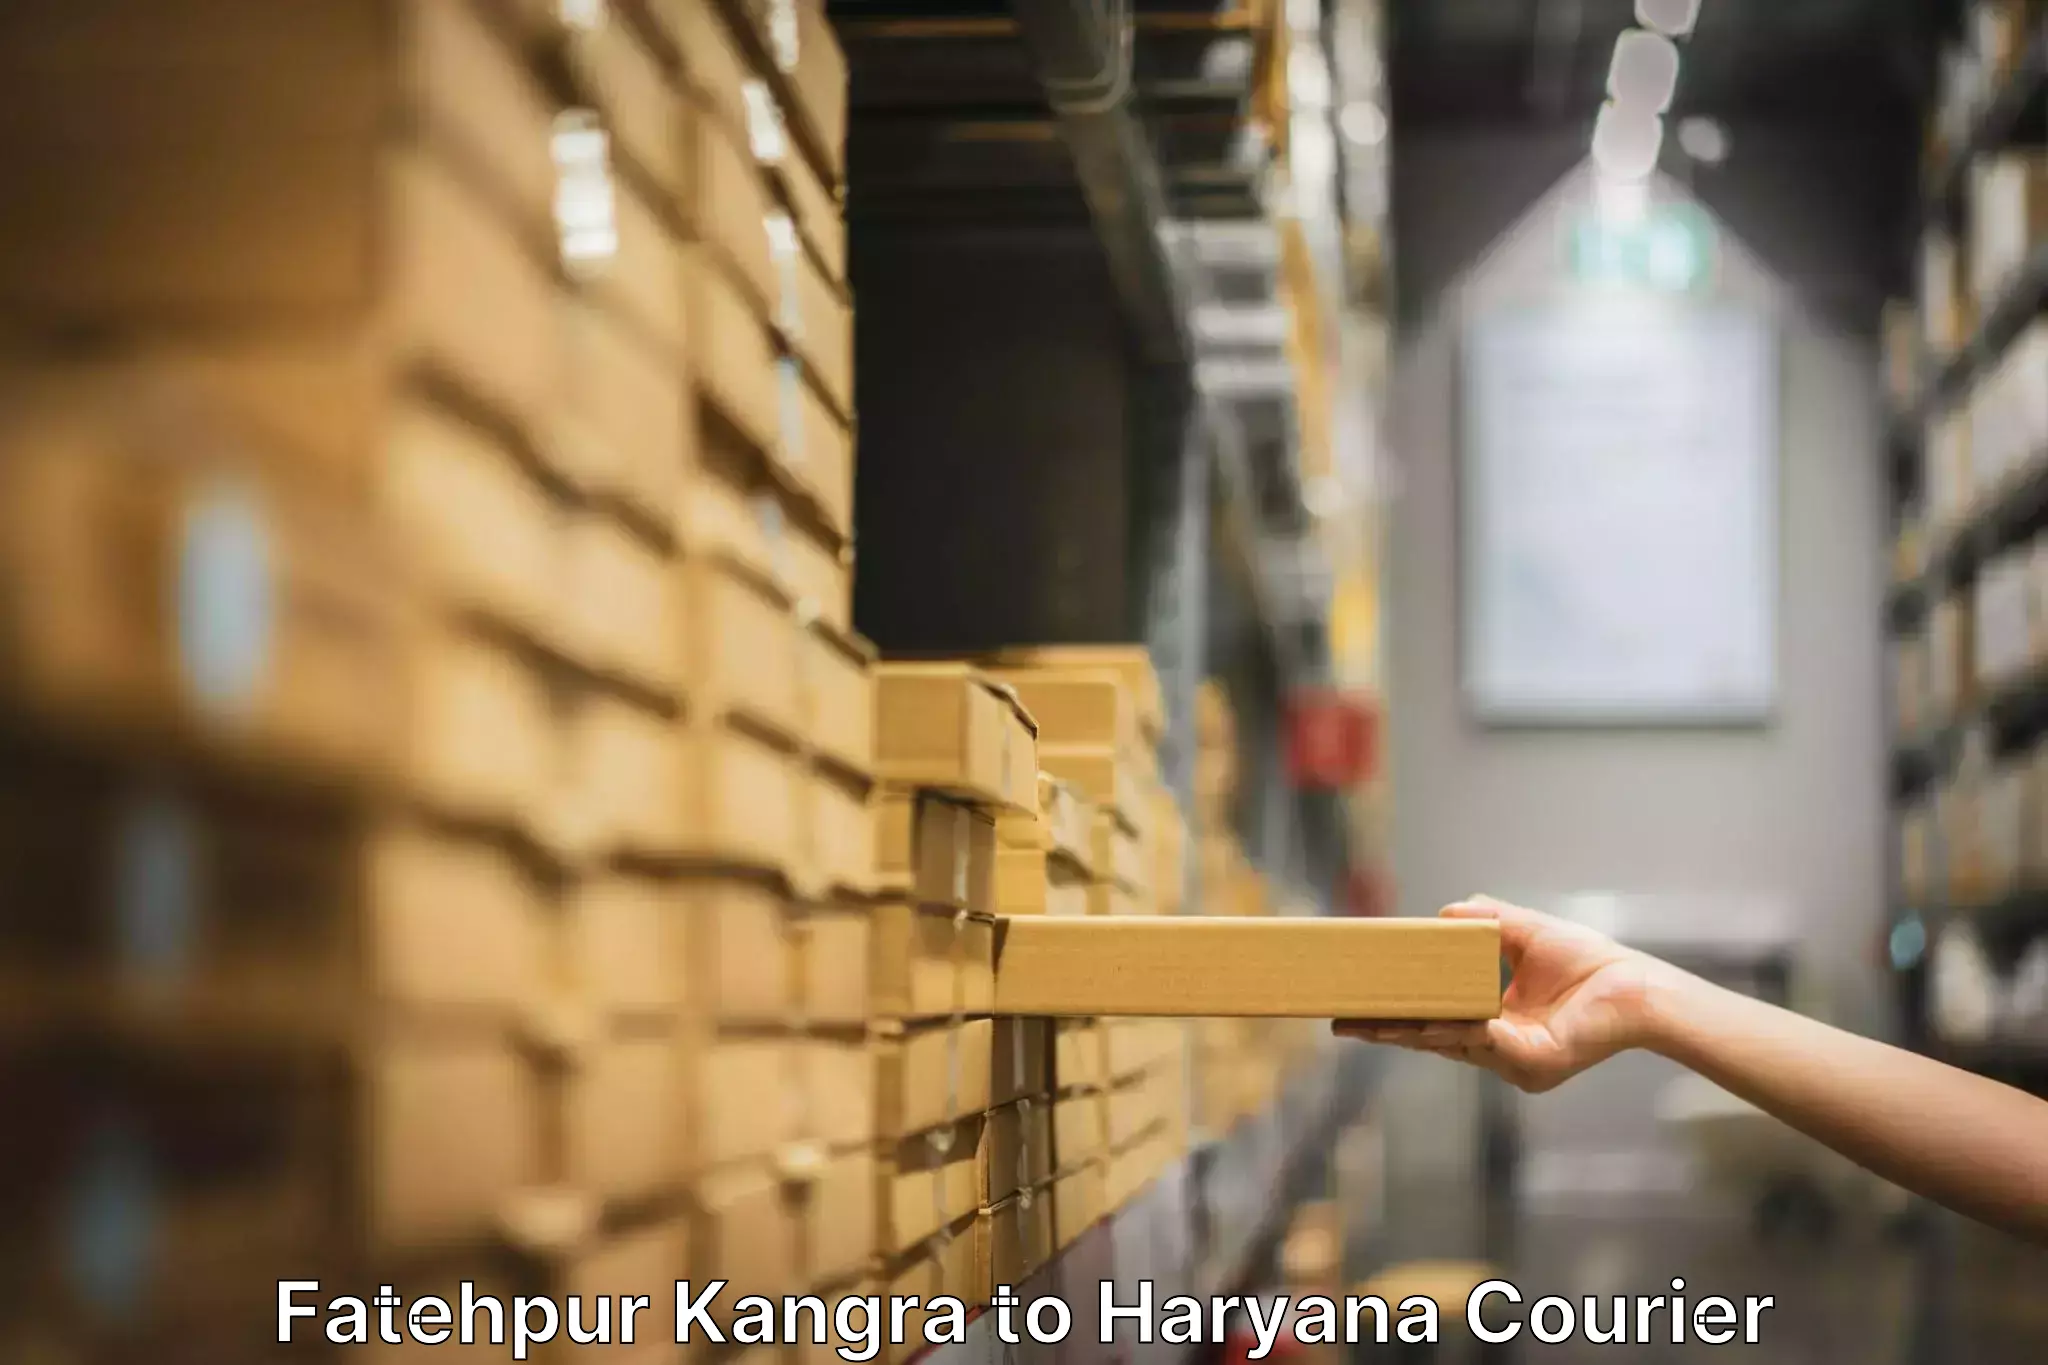 Professional furniture movers Fatehpur Kangra to Gurugram